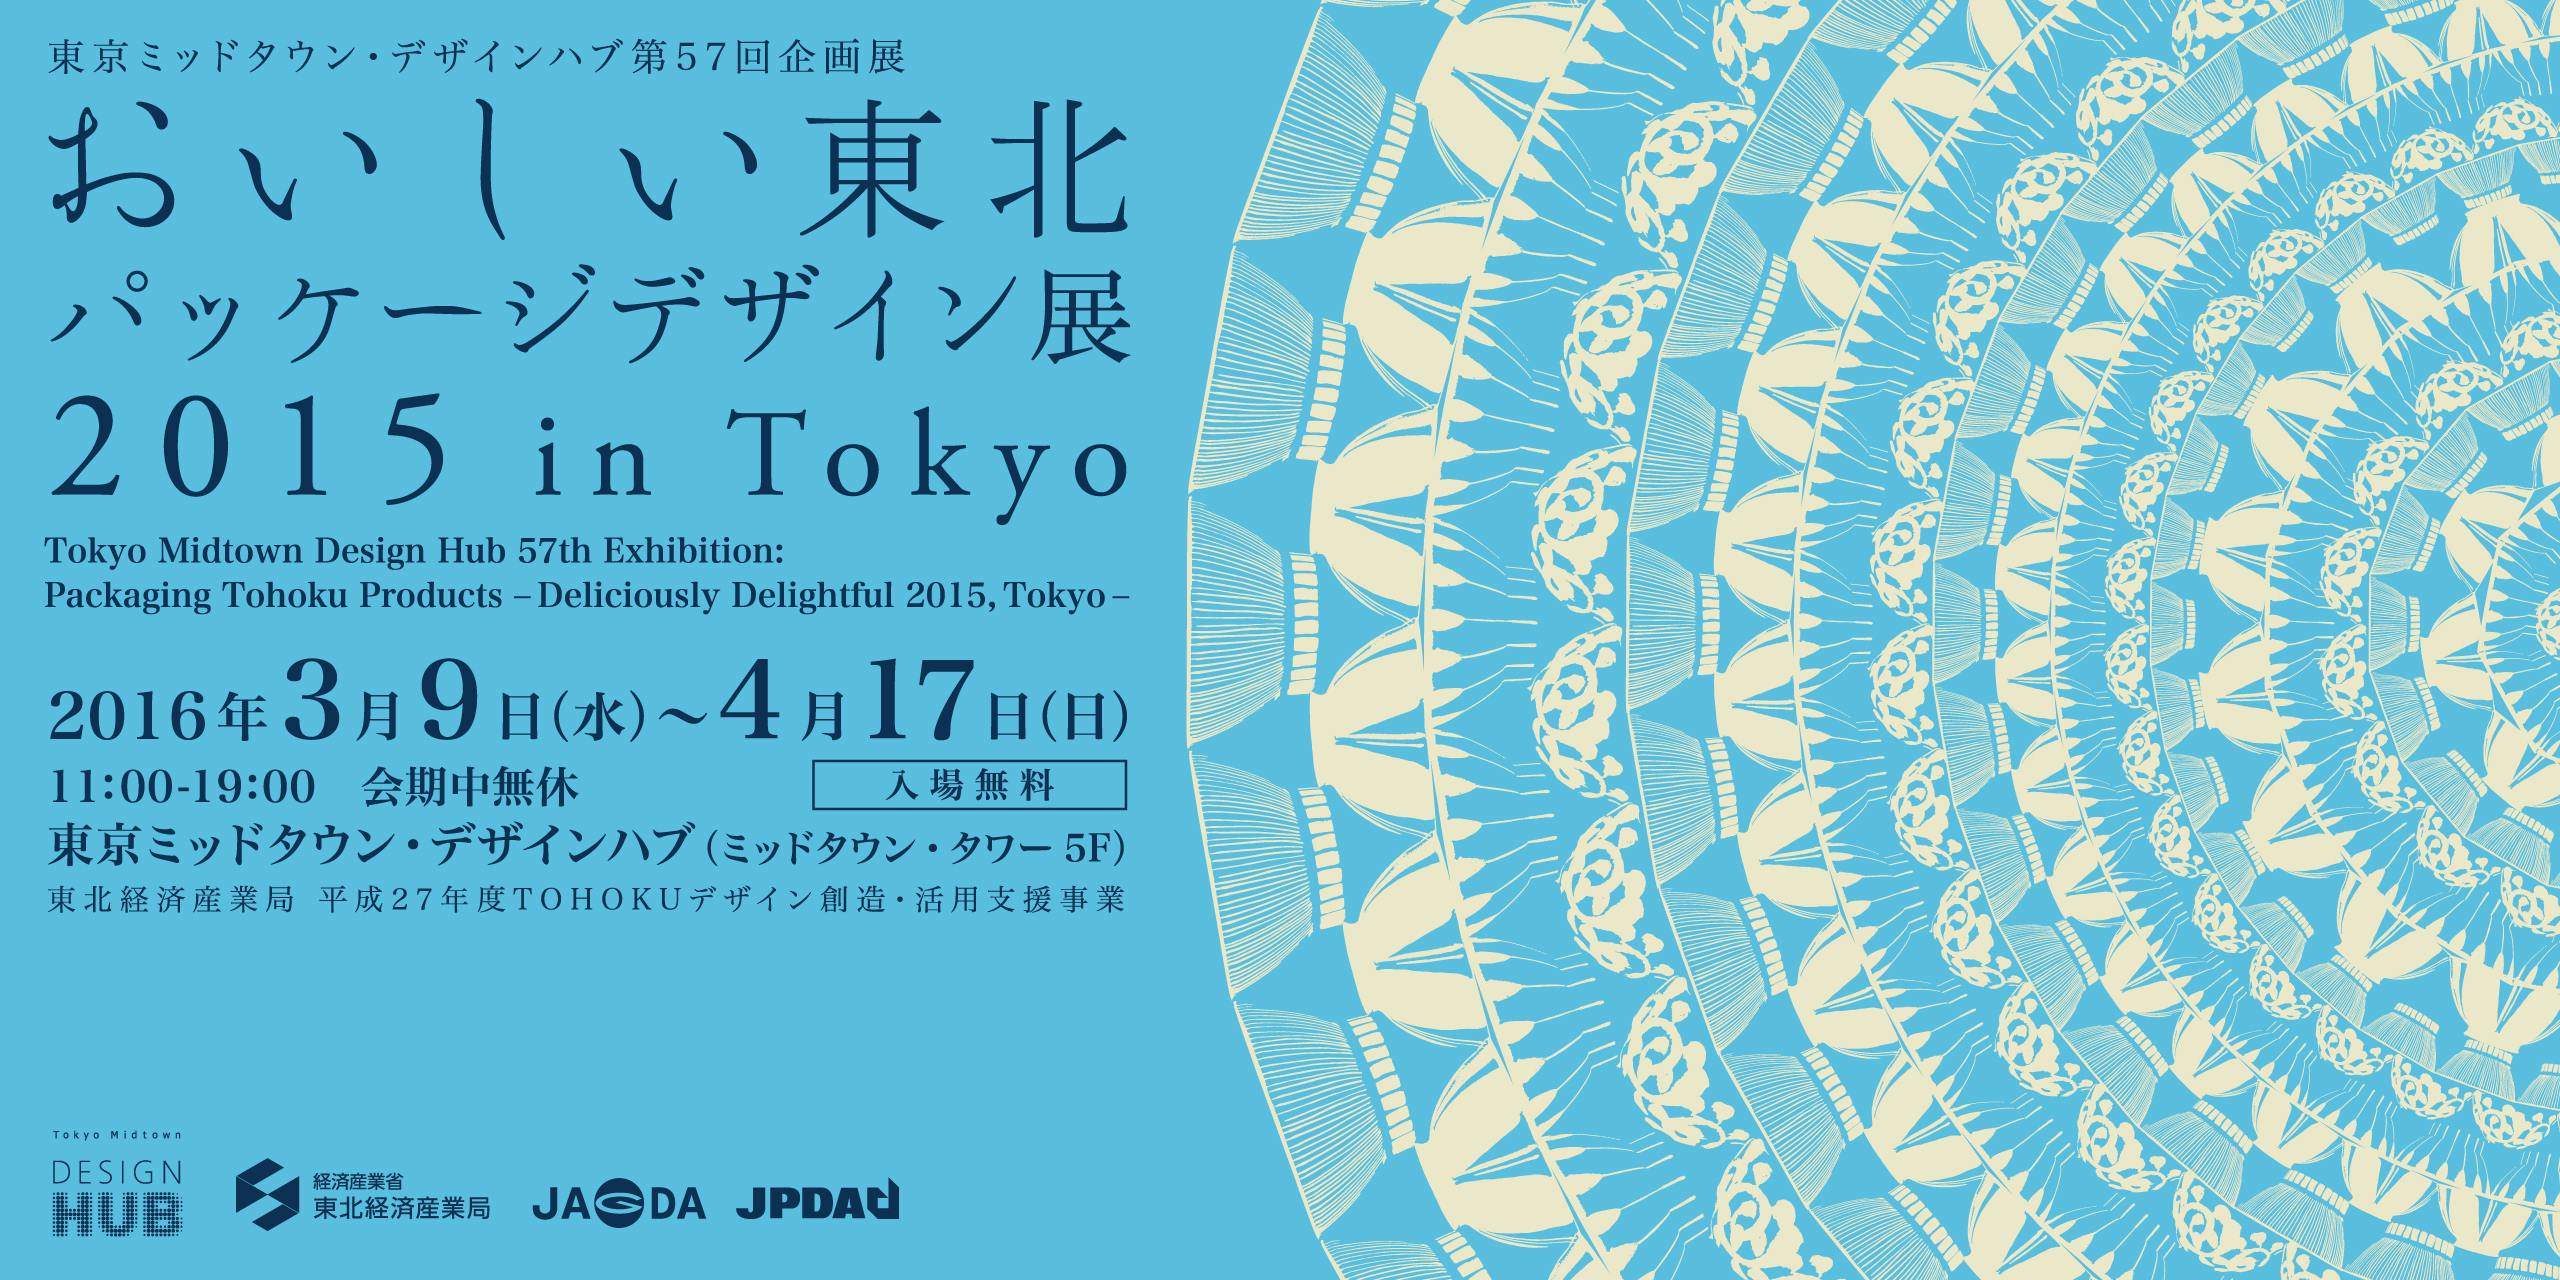 「おいしい東北パッケージデザイン展2015 in Tokyo」オープニングトーク